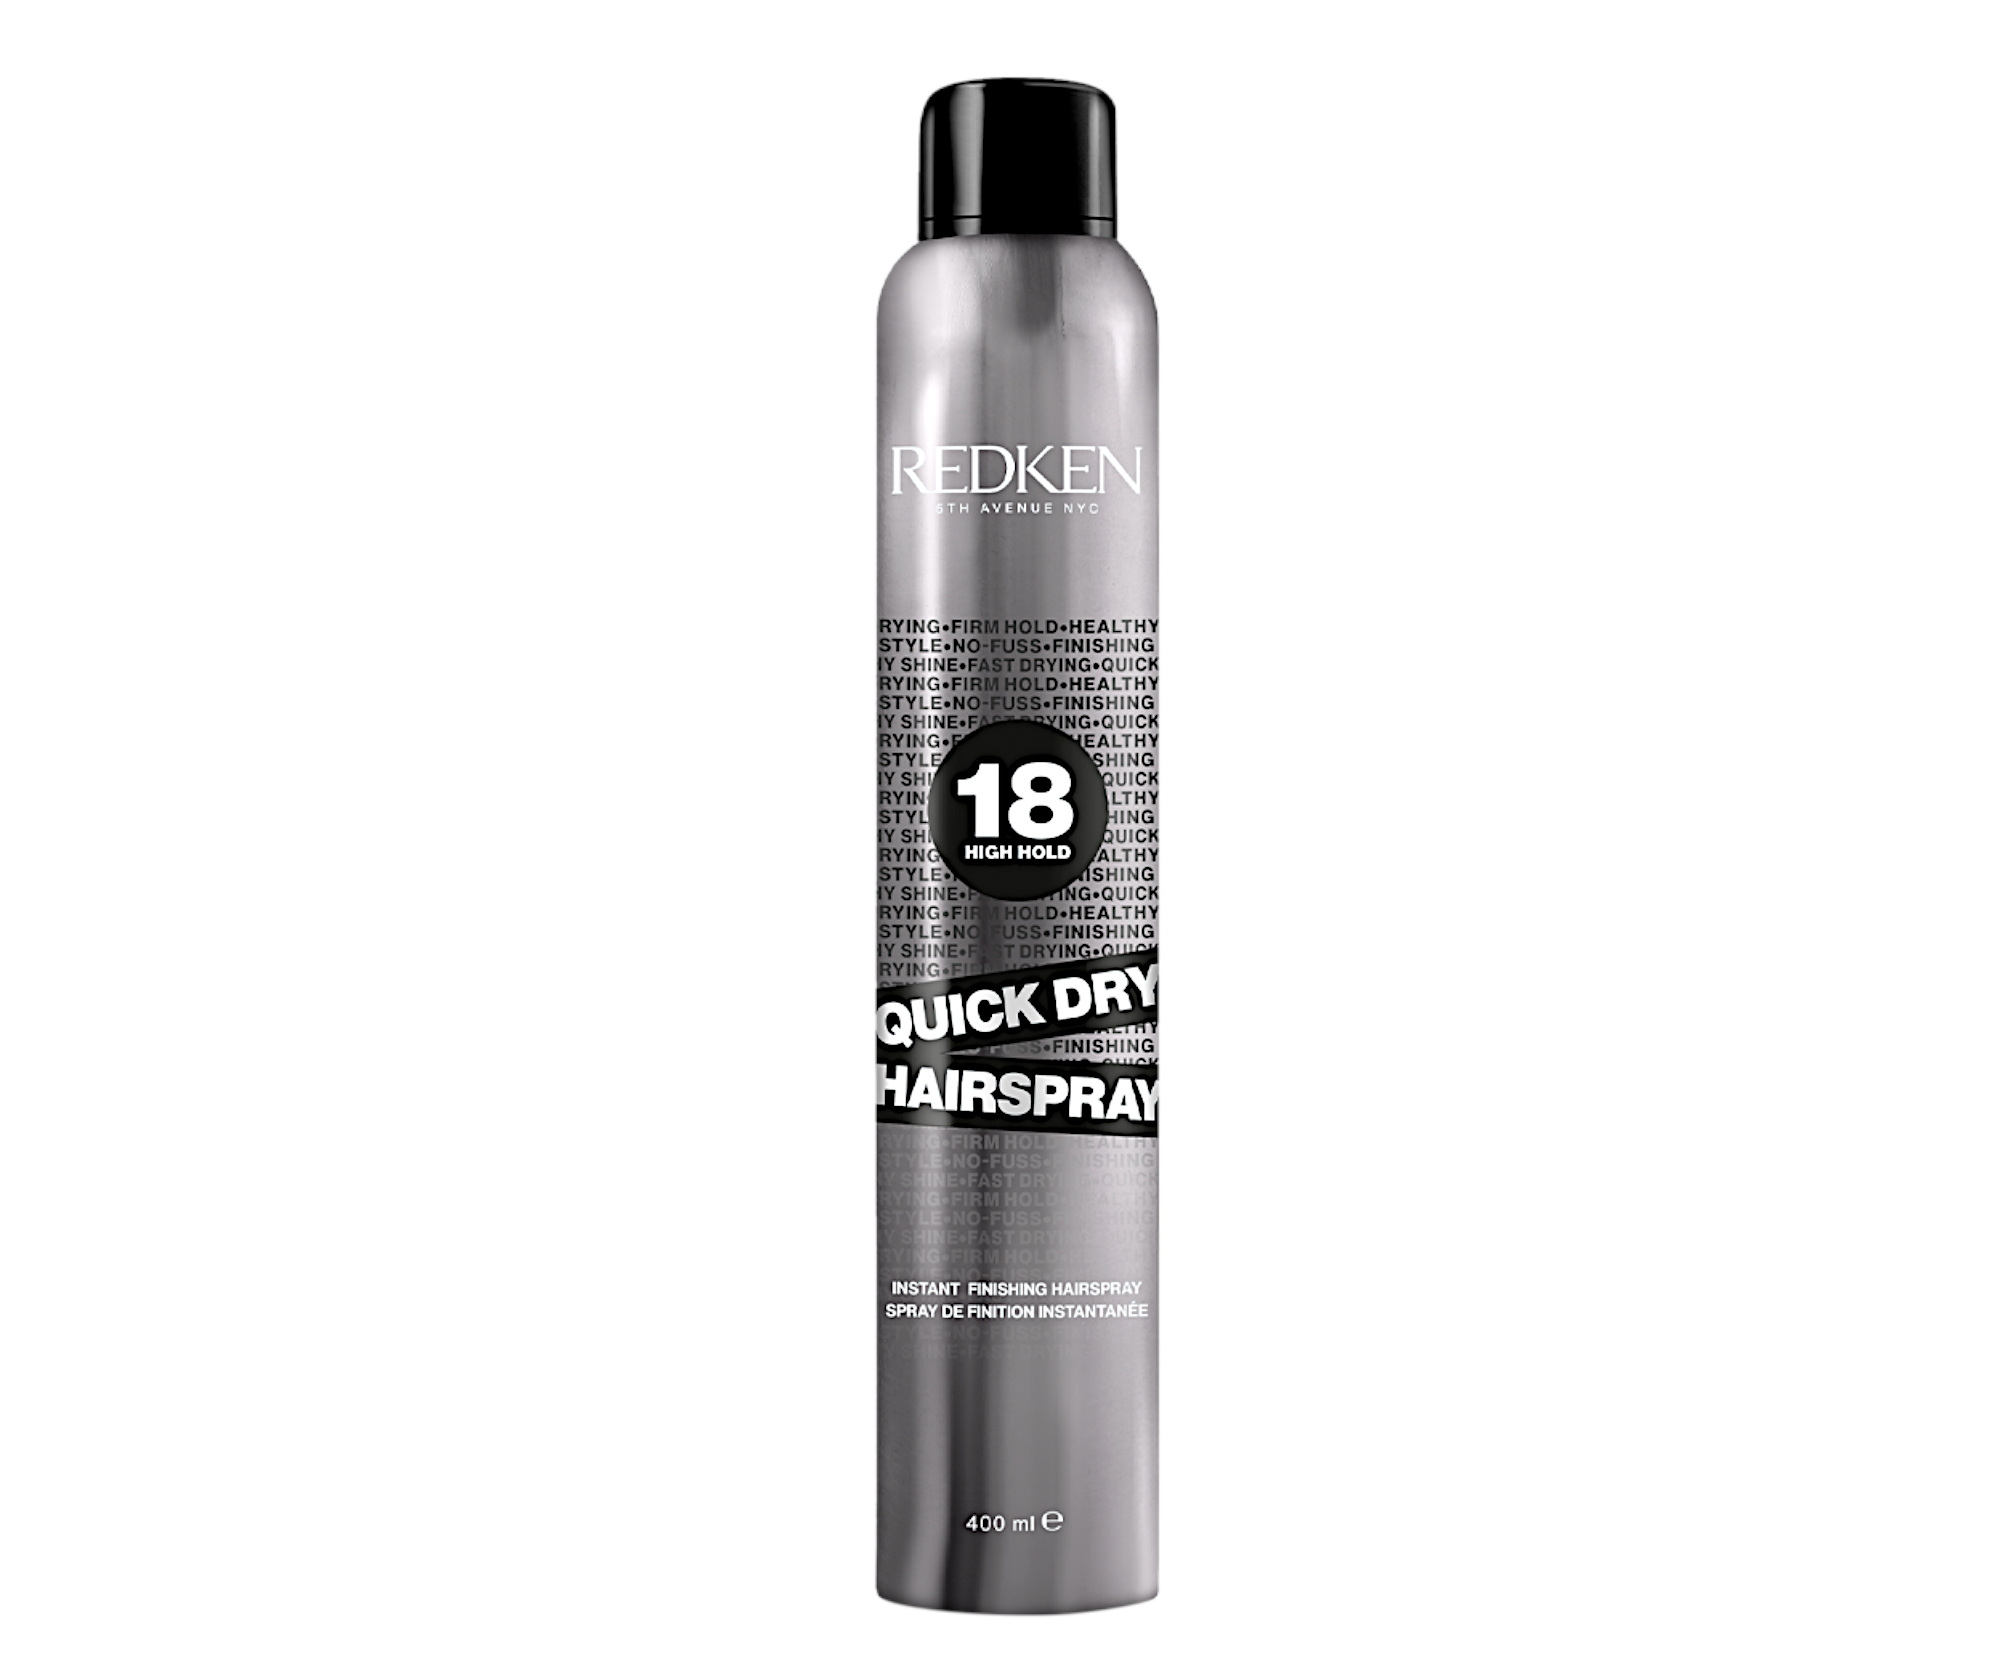 Rychleschnoucí lak na vlasy s velmi silnou fixací Redken Quick Dry Hairspray - 400 ml + DÁREK ZDARMA